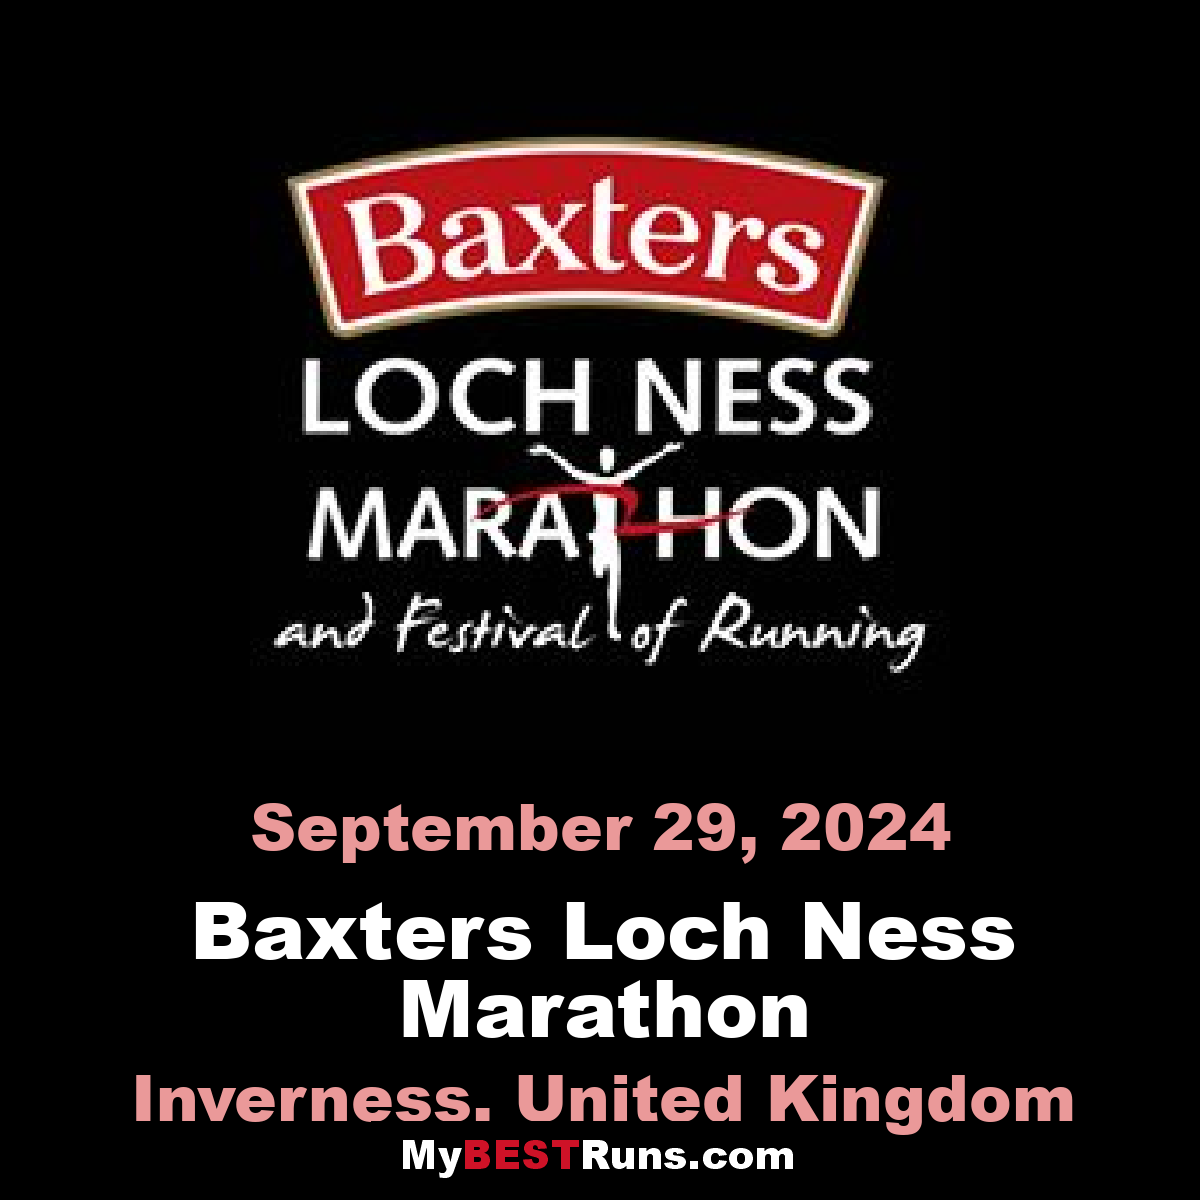 Baxters Loch Ness Marathon